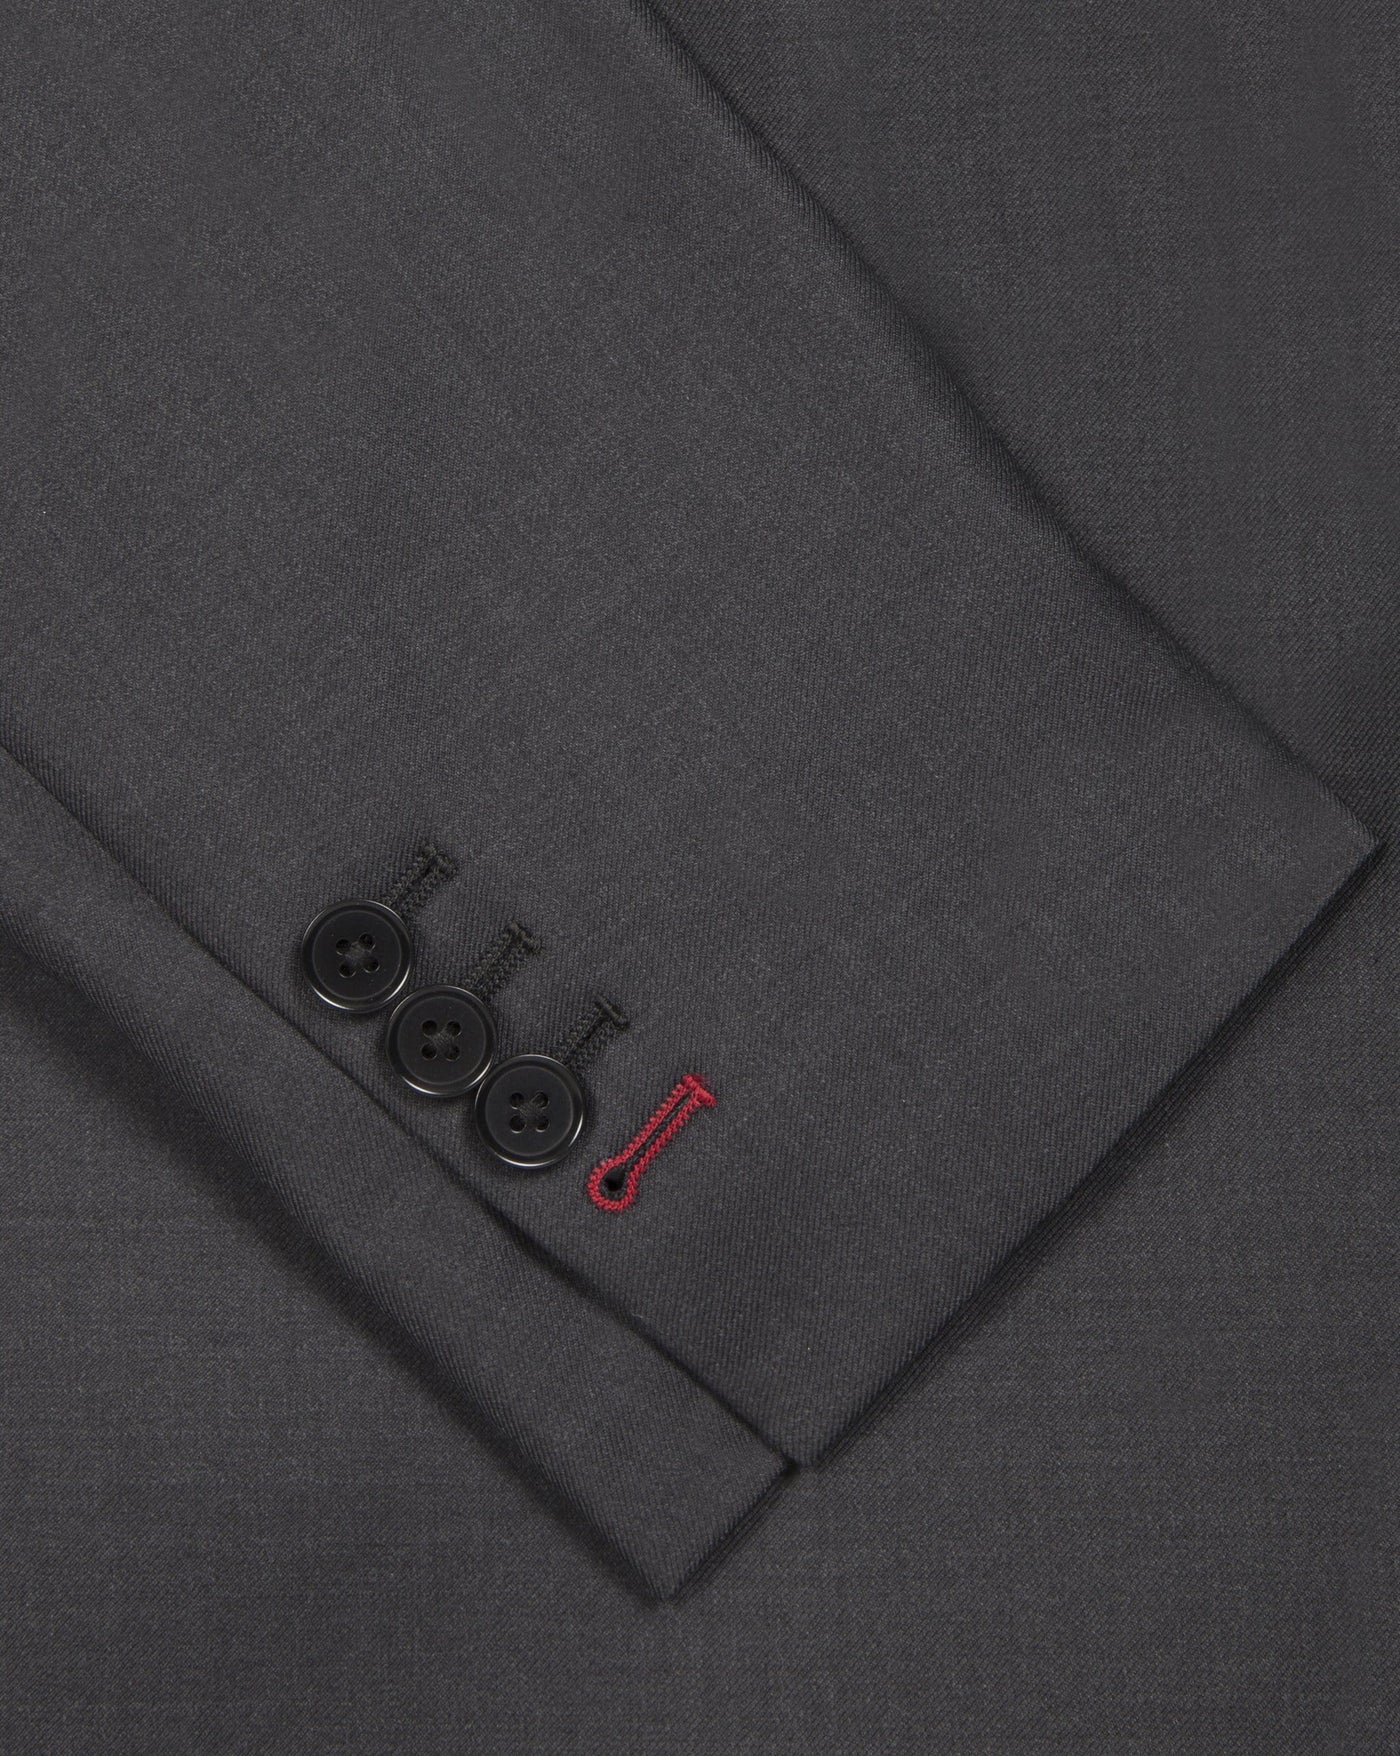 Charcoal Grey Suit - Mark marengo